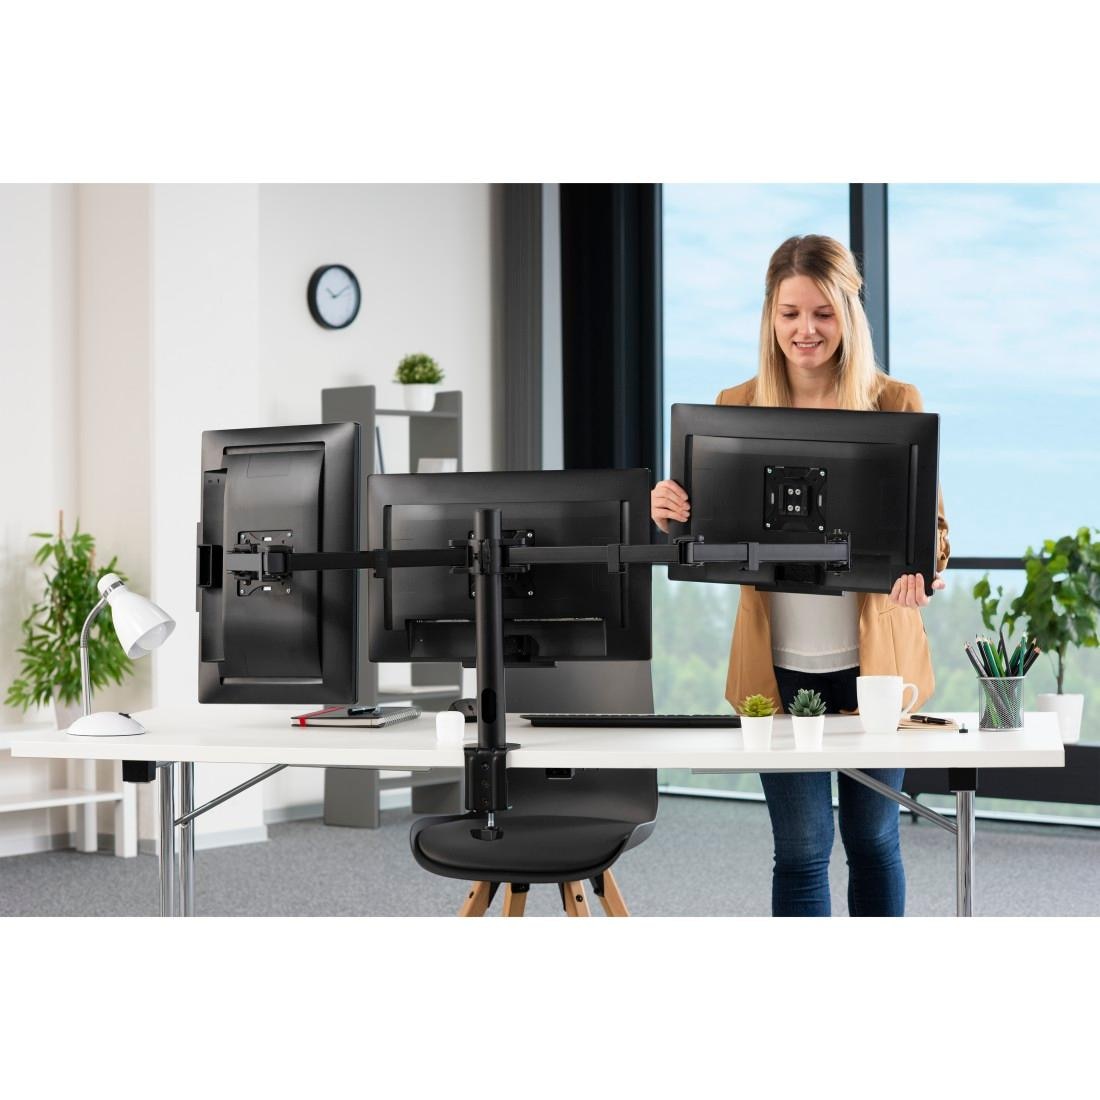 hama Monitor-Tischhalterung Fullmotion, VESA 100x100, bis 10 kg Traglast, 3  Gelenke, schwarz